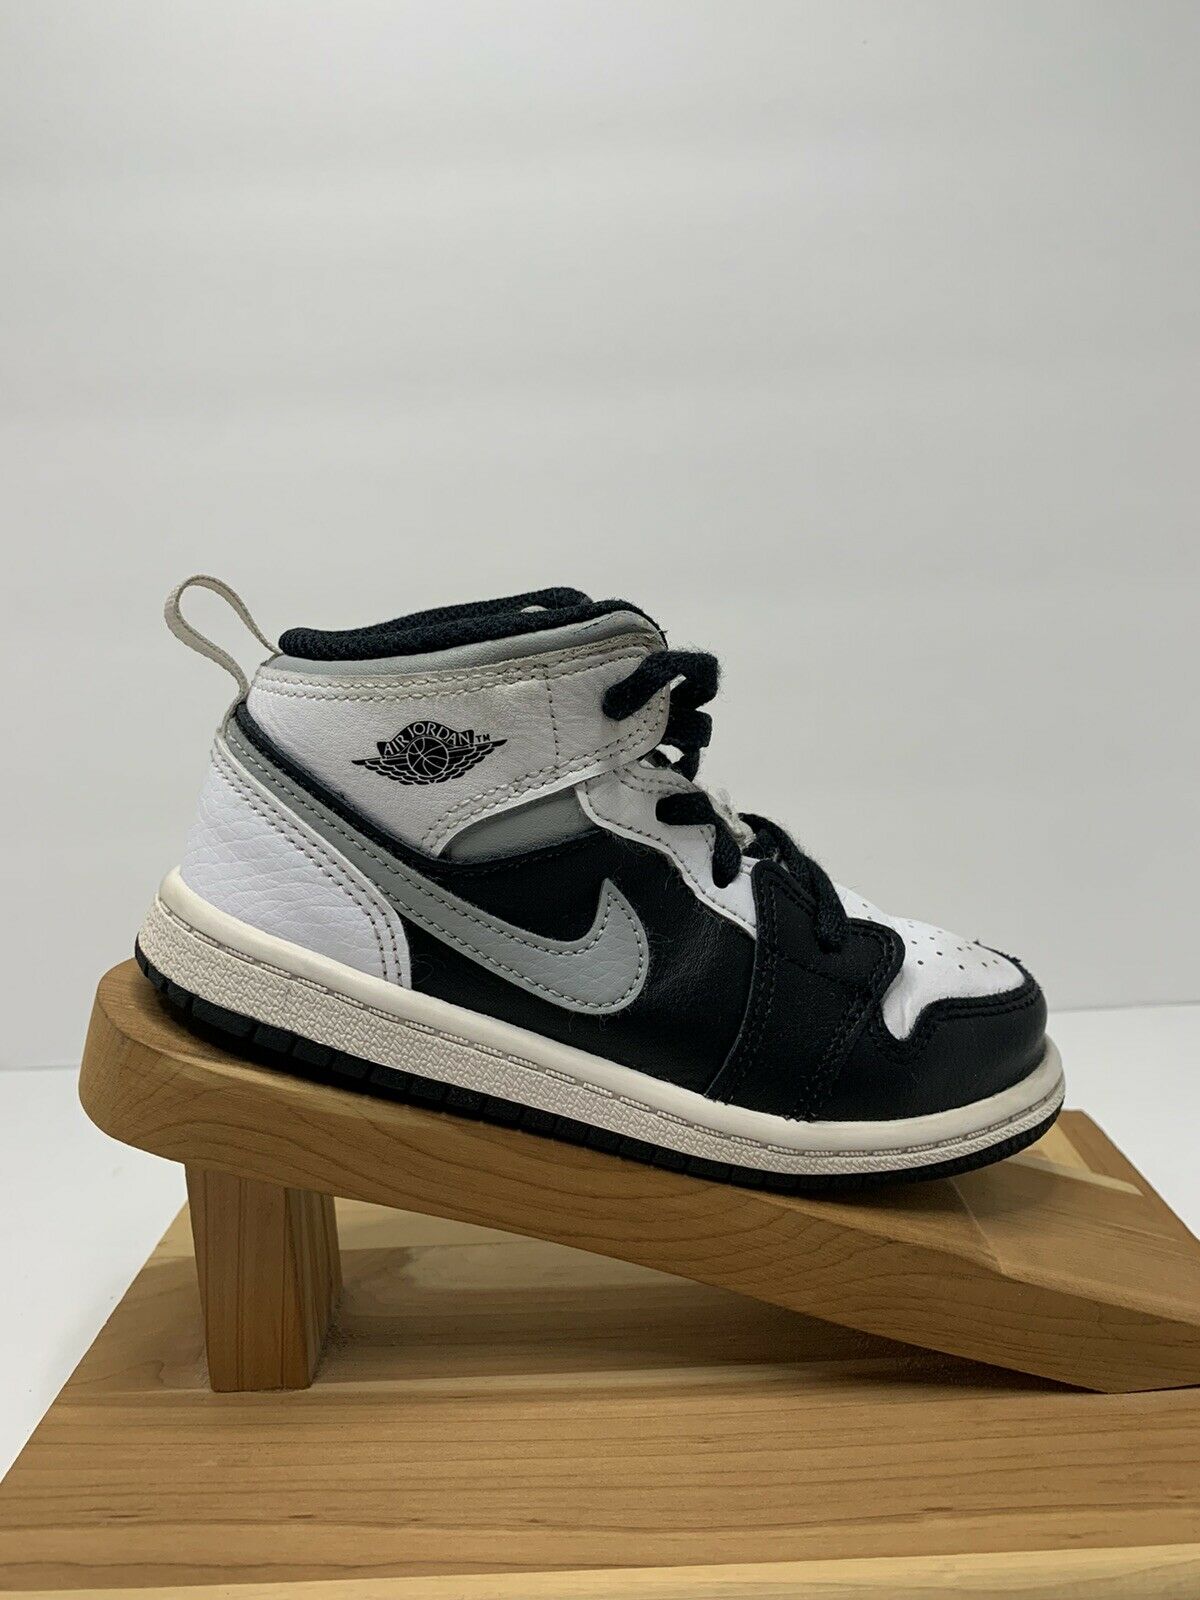 Nike Jordan 1 Mid TD White Shadow Toddler Baby 640735 073 Shoes Size 10c NIB